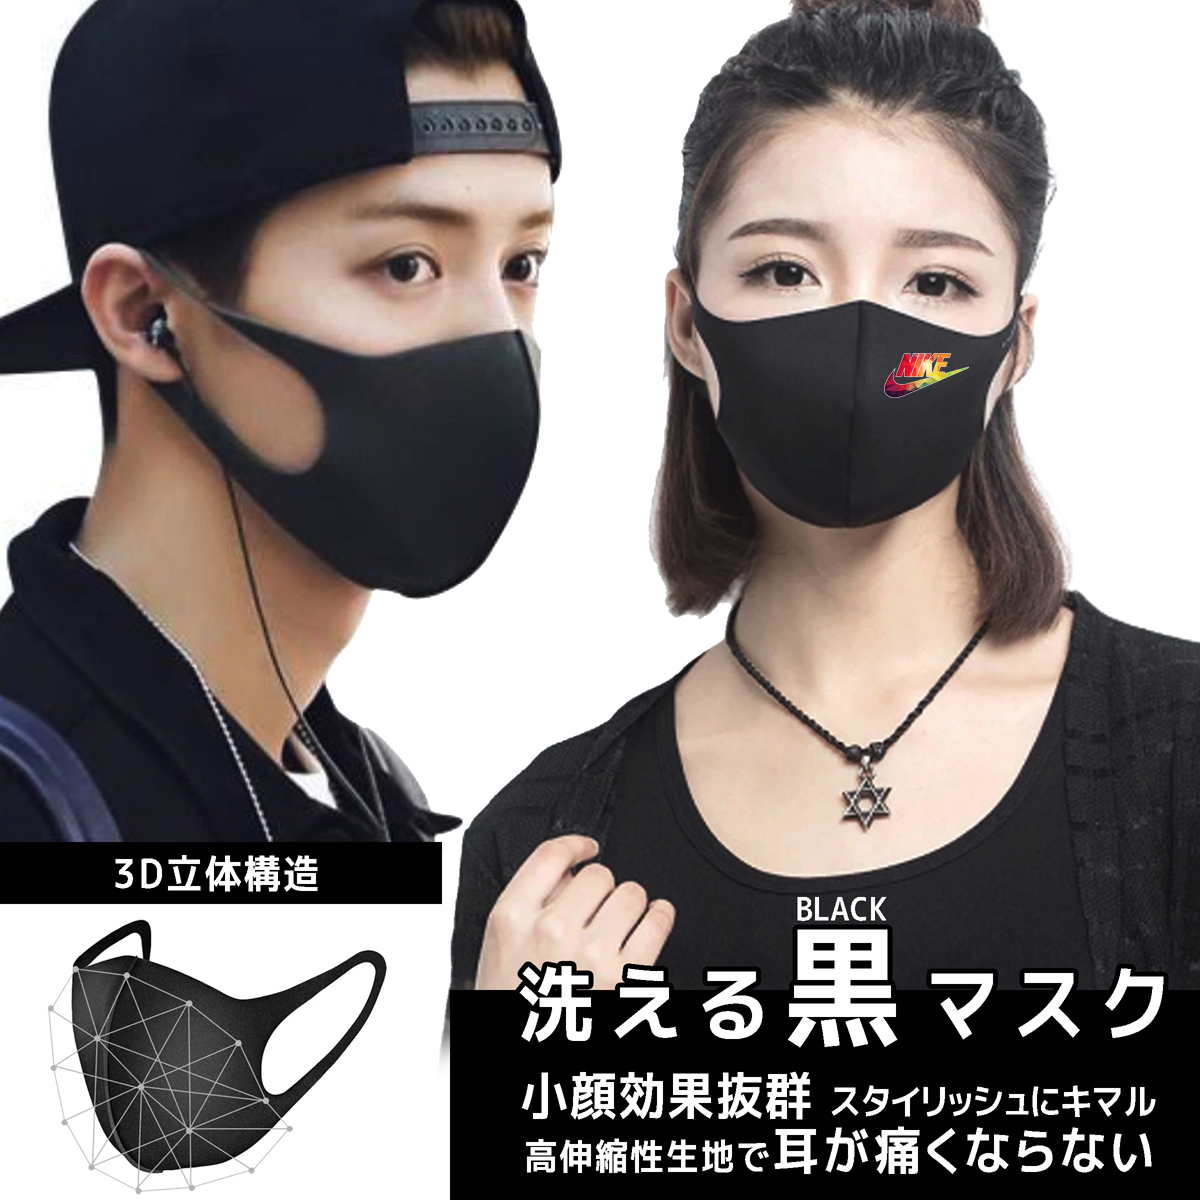 スポーツブランドナイキ3D立体マスク